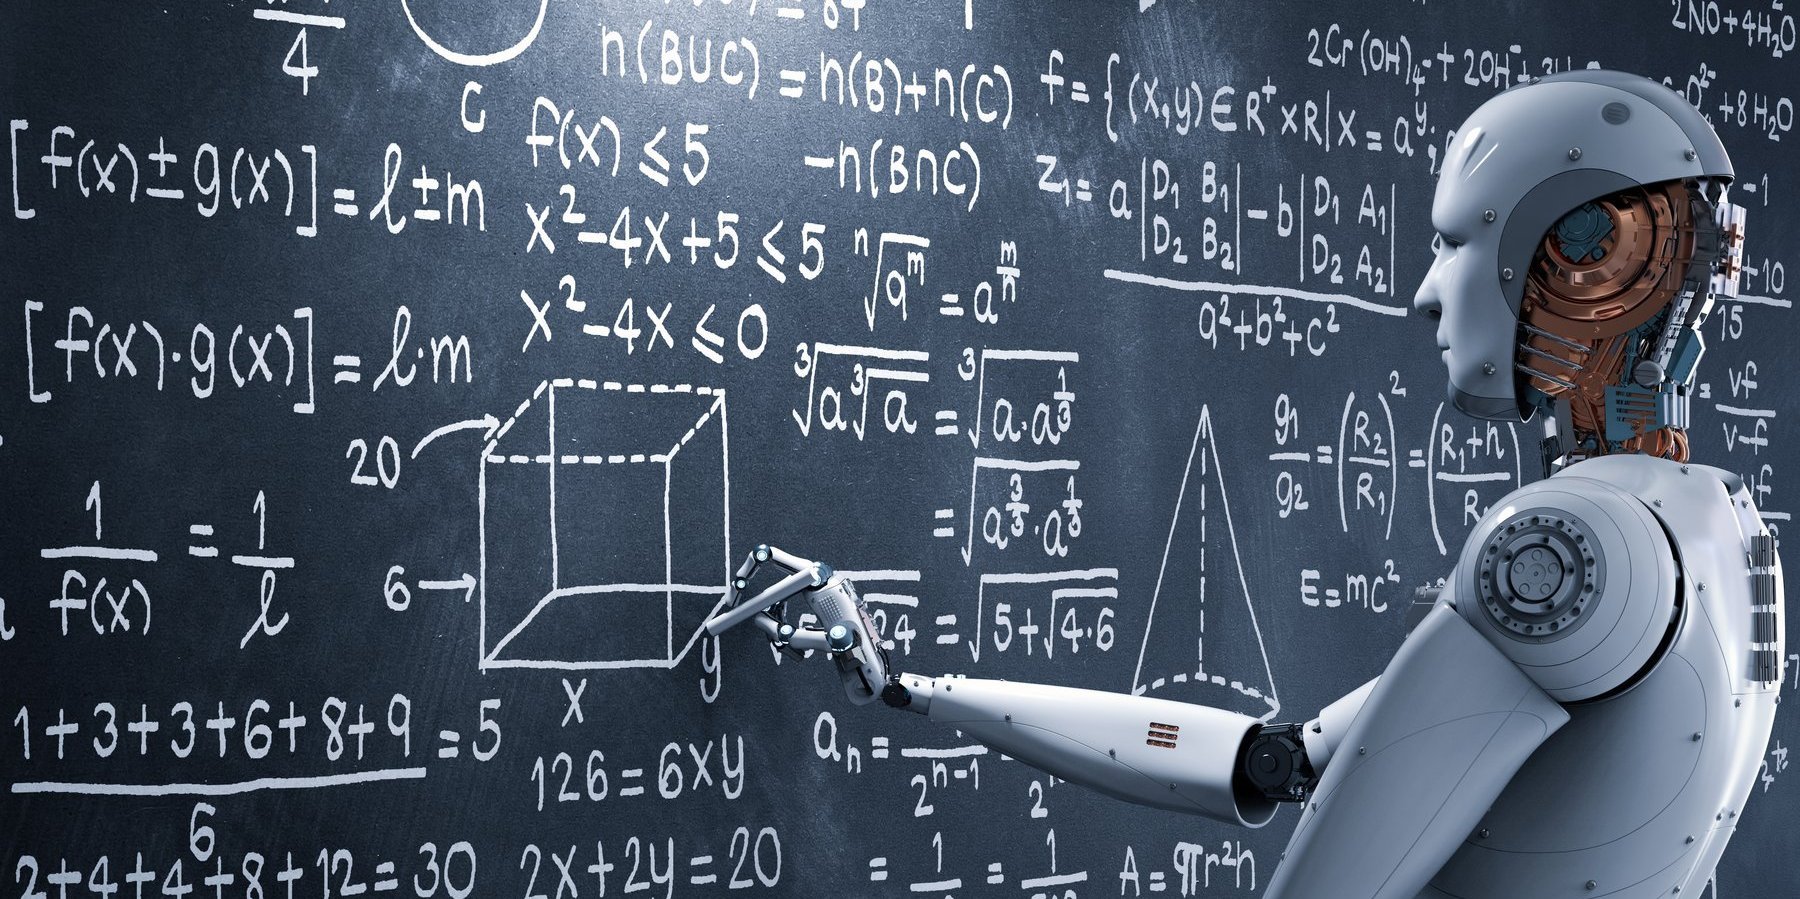 Ein Roboter in menschenform steht vor einer Tafel voll mit mathematischen Formeln und scheint zu überlegen